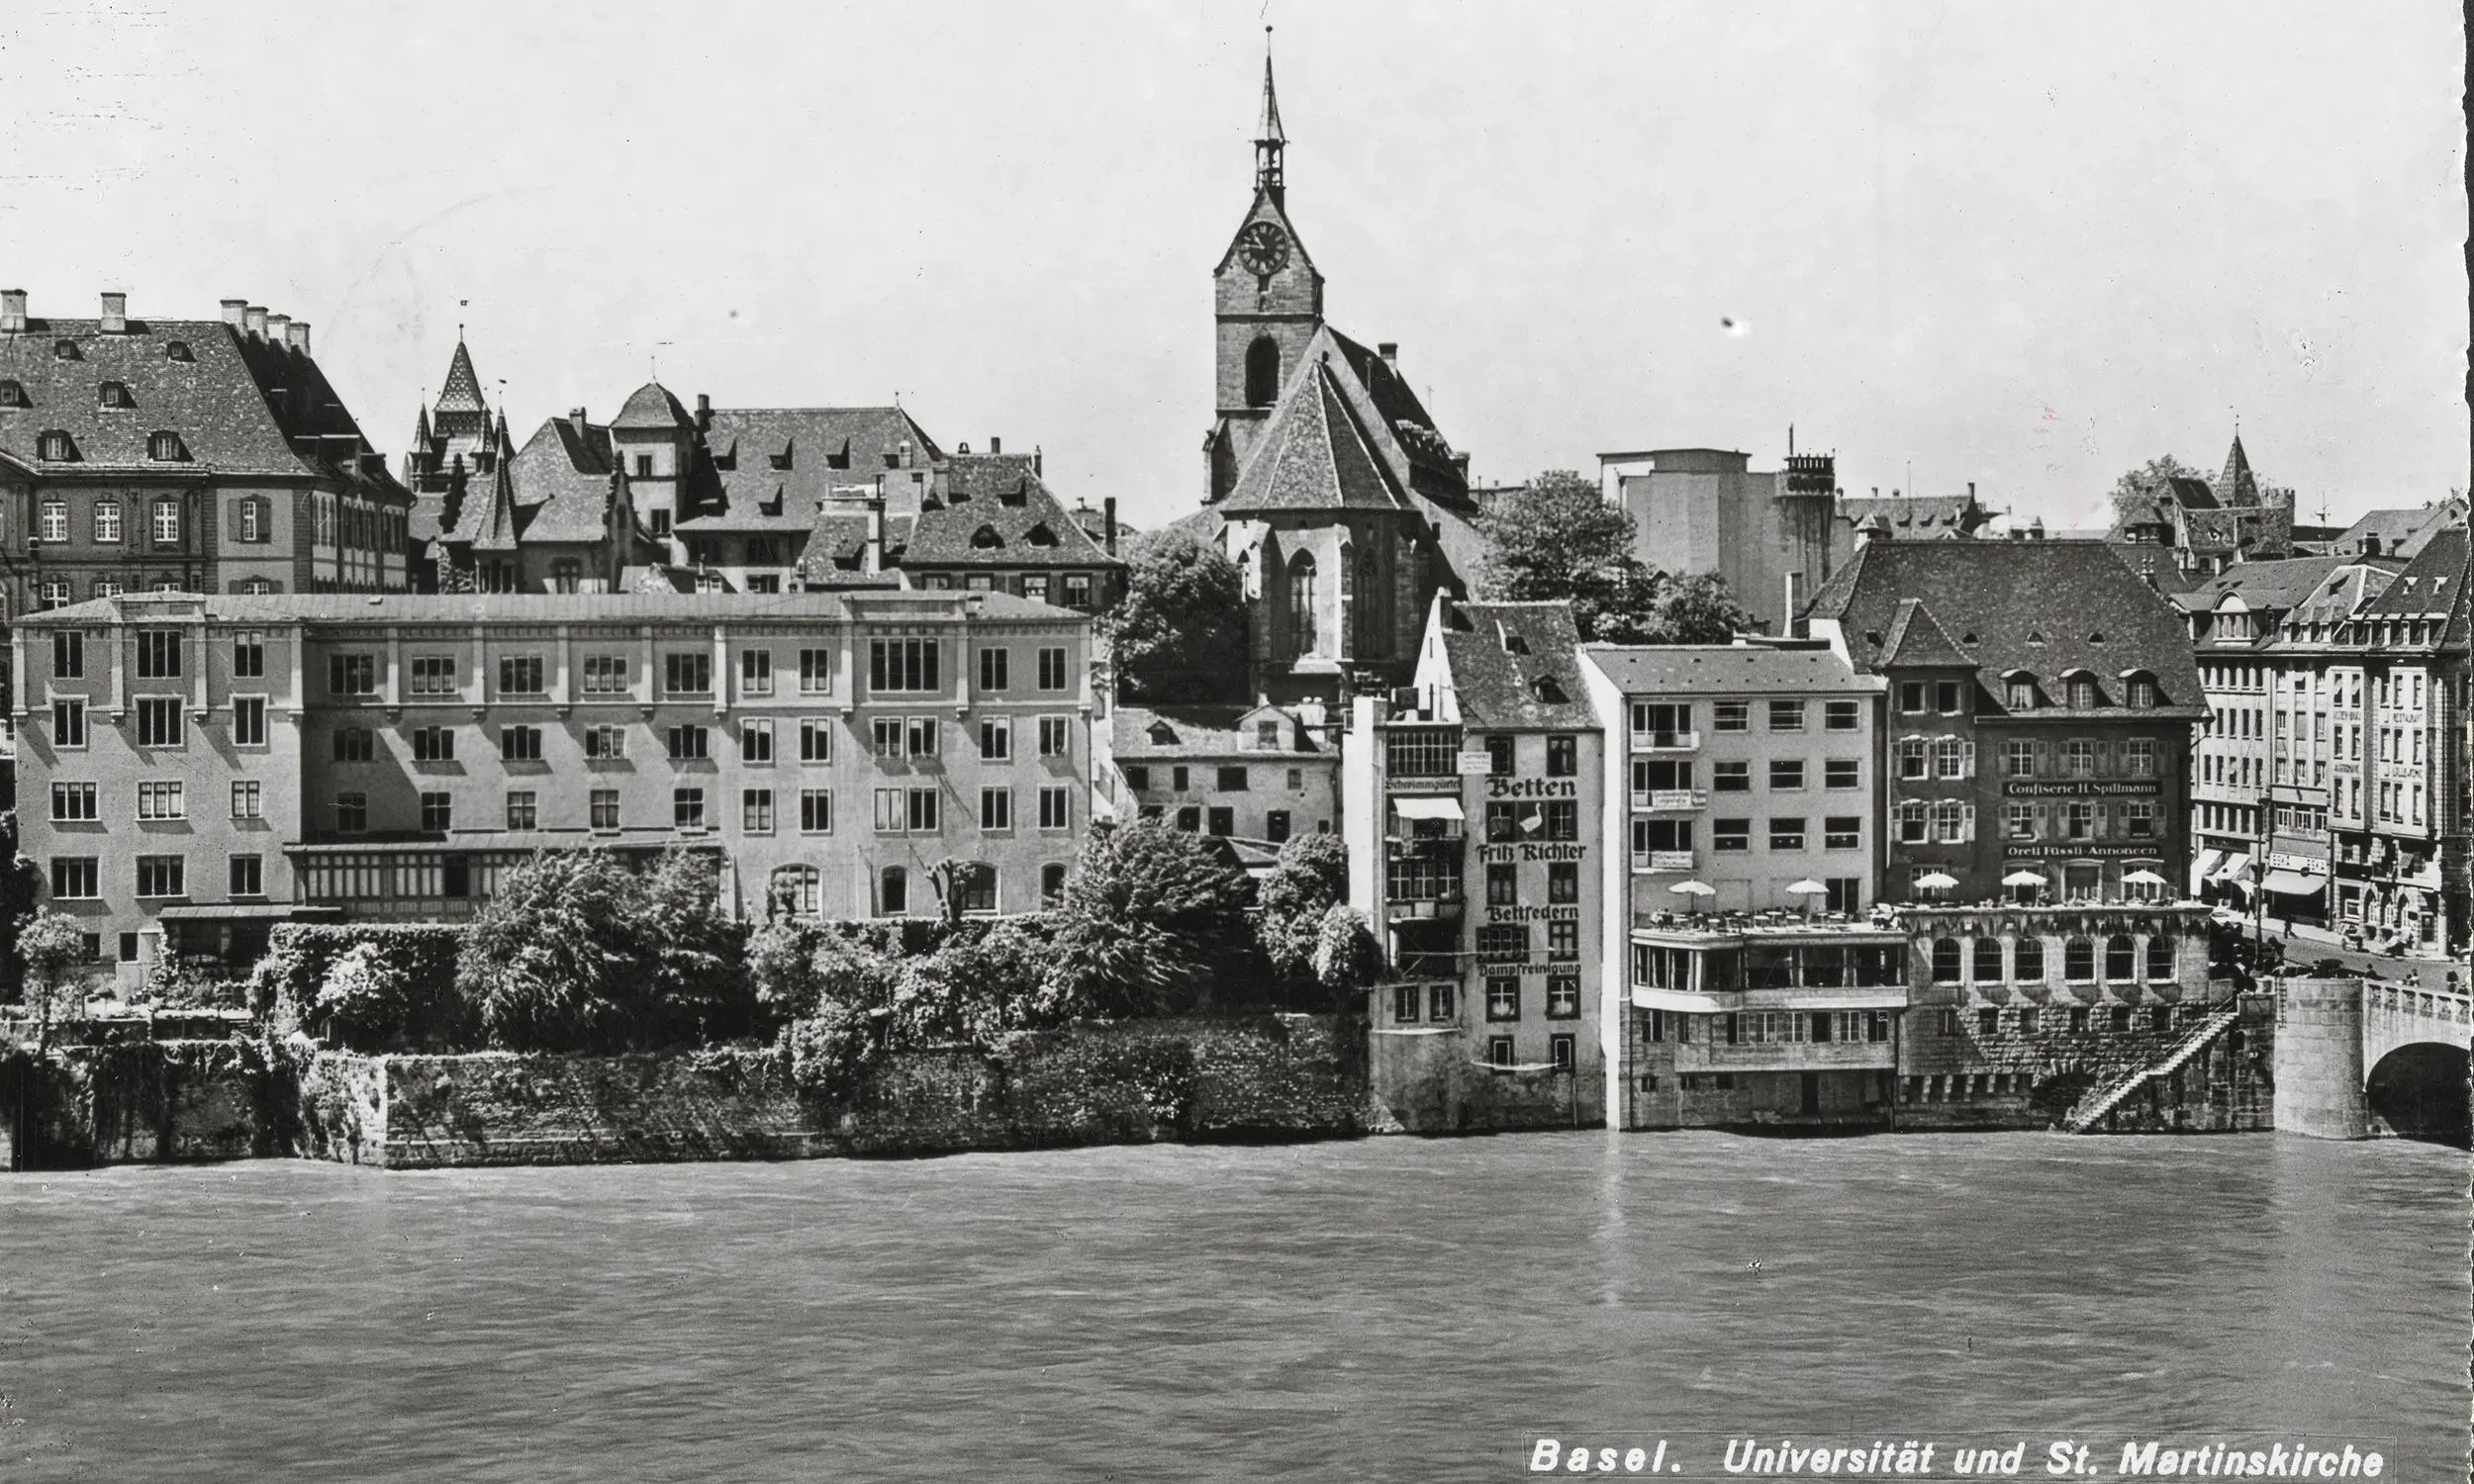 Postkarte der mittleren Rheinbrücke mit Martinskirche und alter Universität